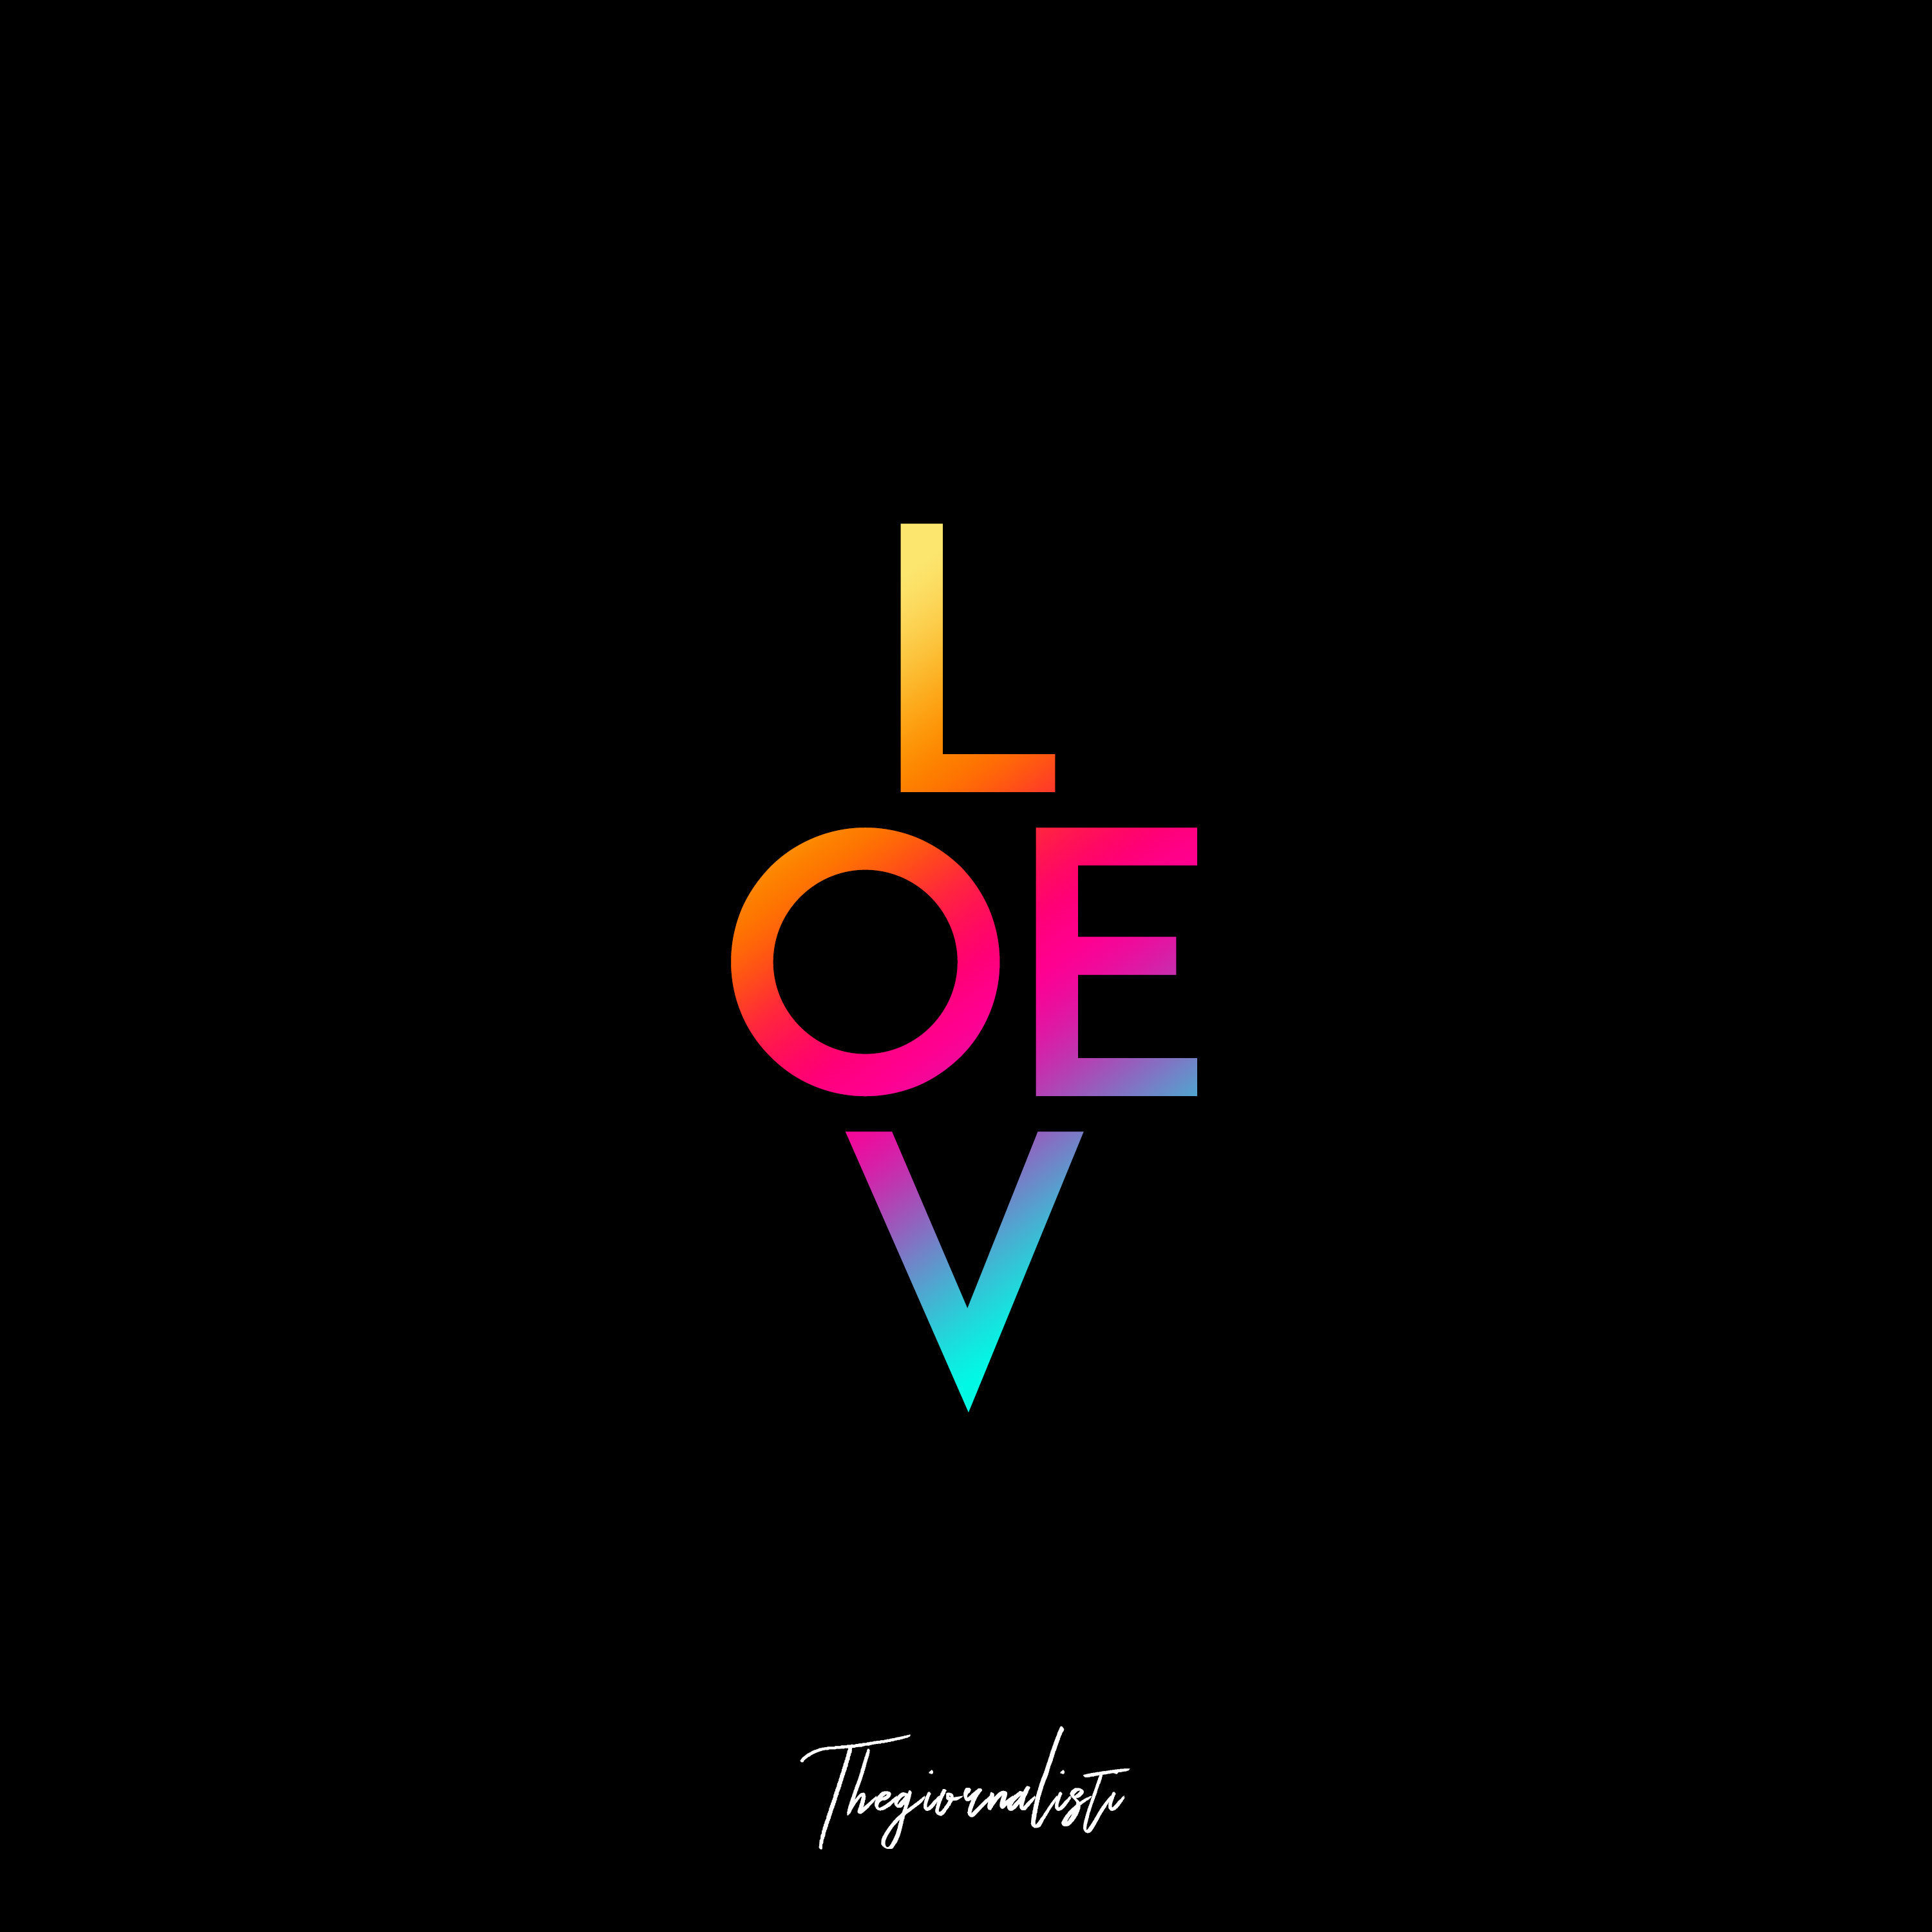 Thegiornalisti-LOVE-cover-alta